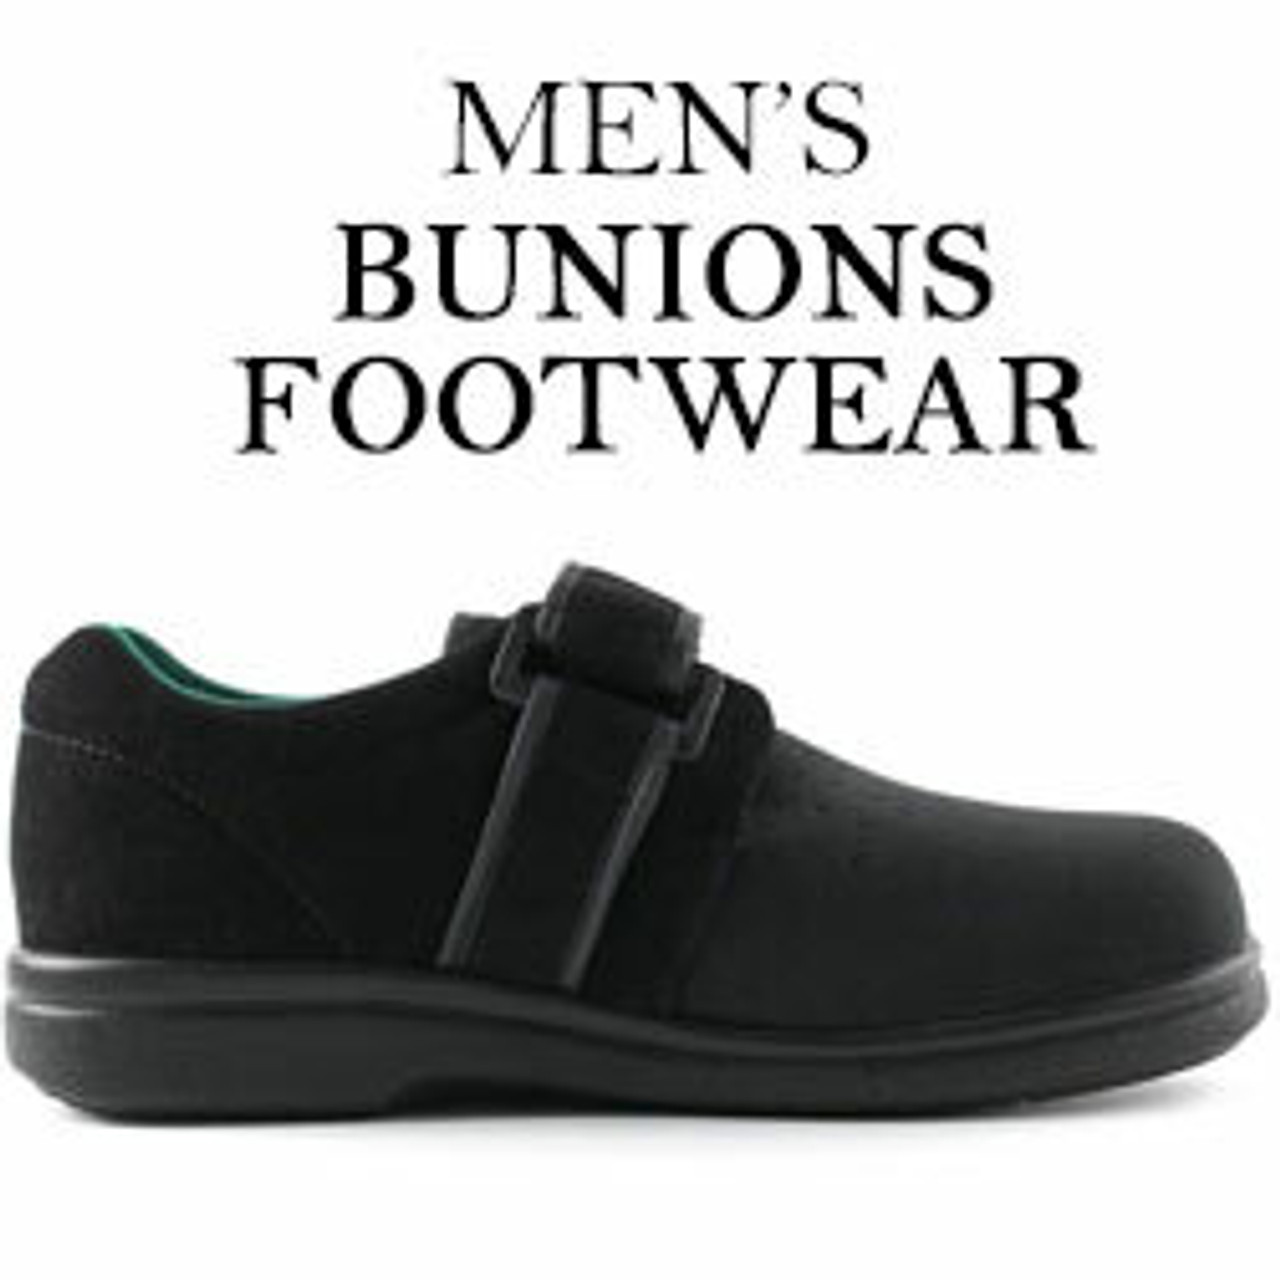 Shoes For Bunions Mens | Mens Shoes For Bunions